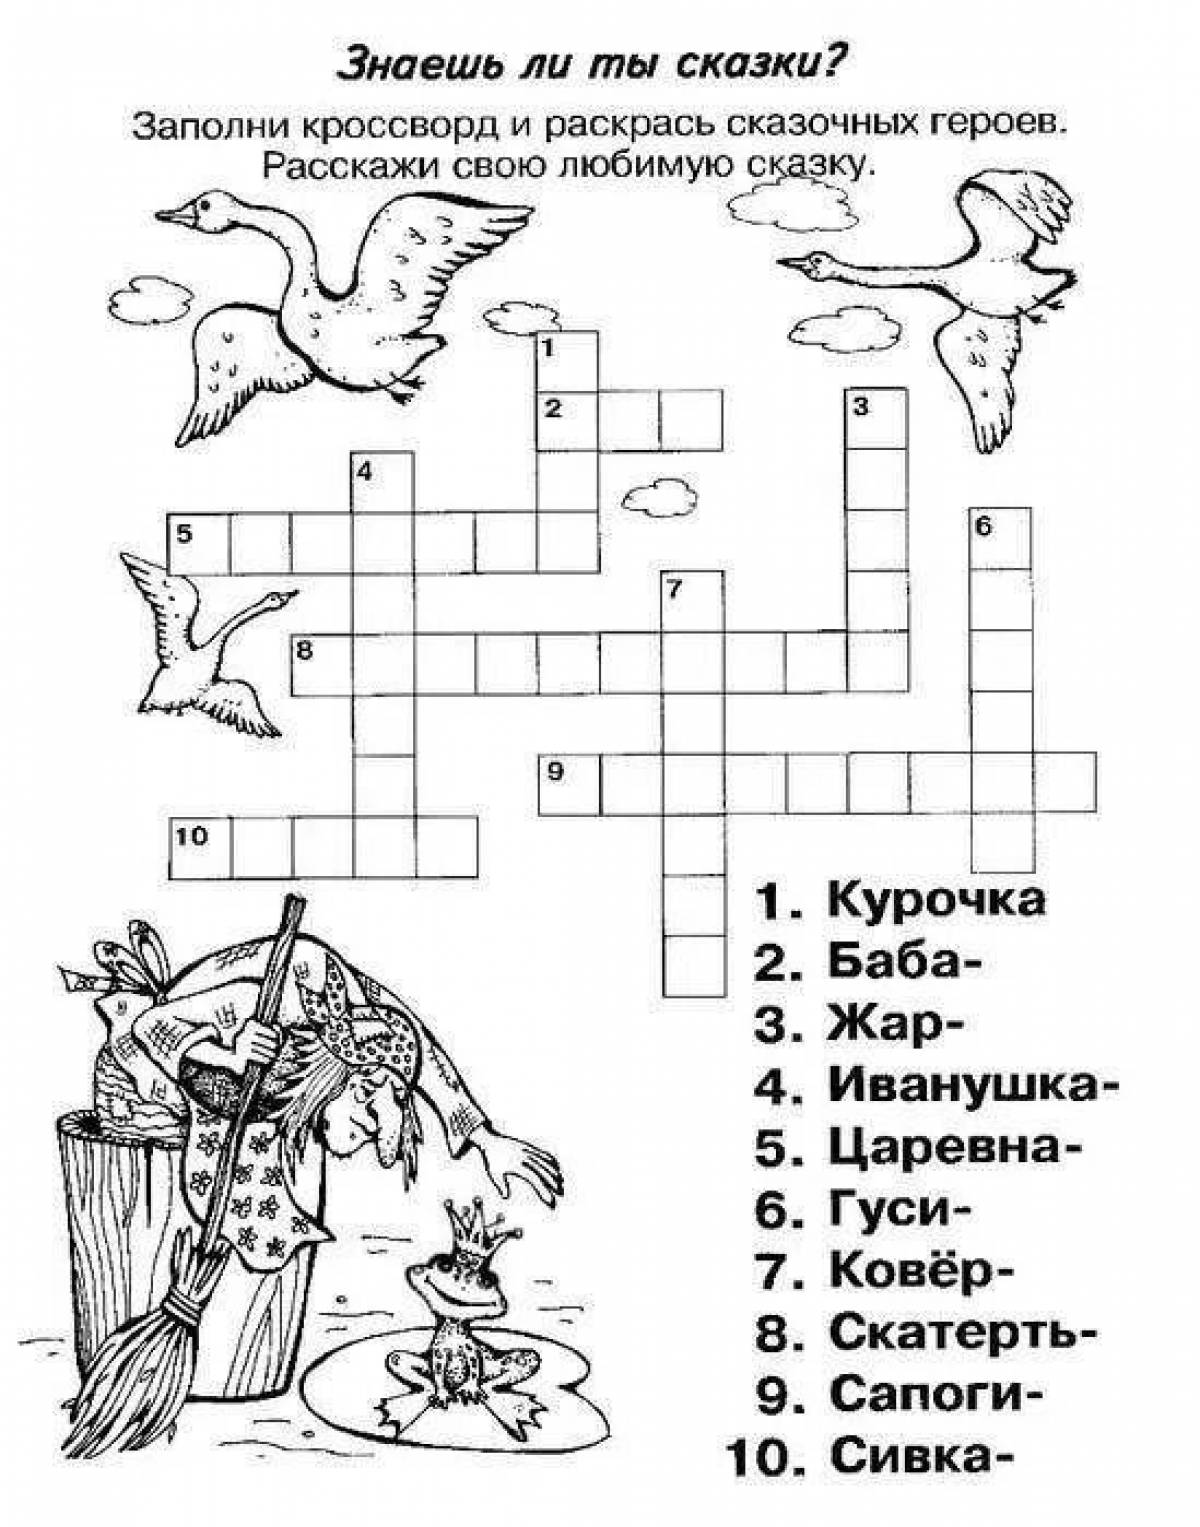 Crossword #15